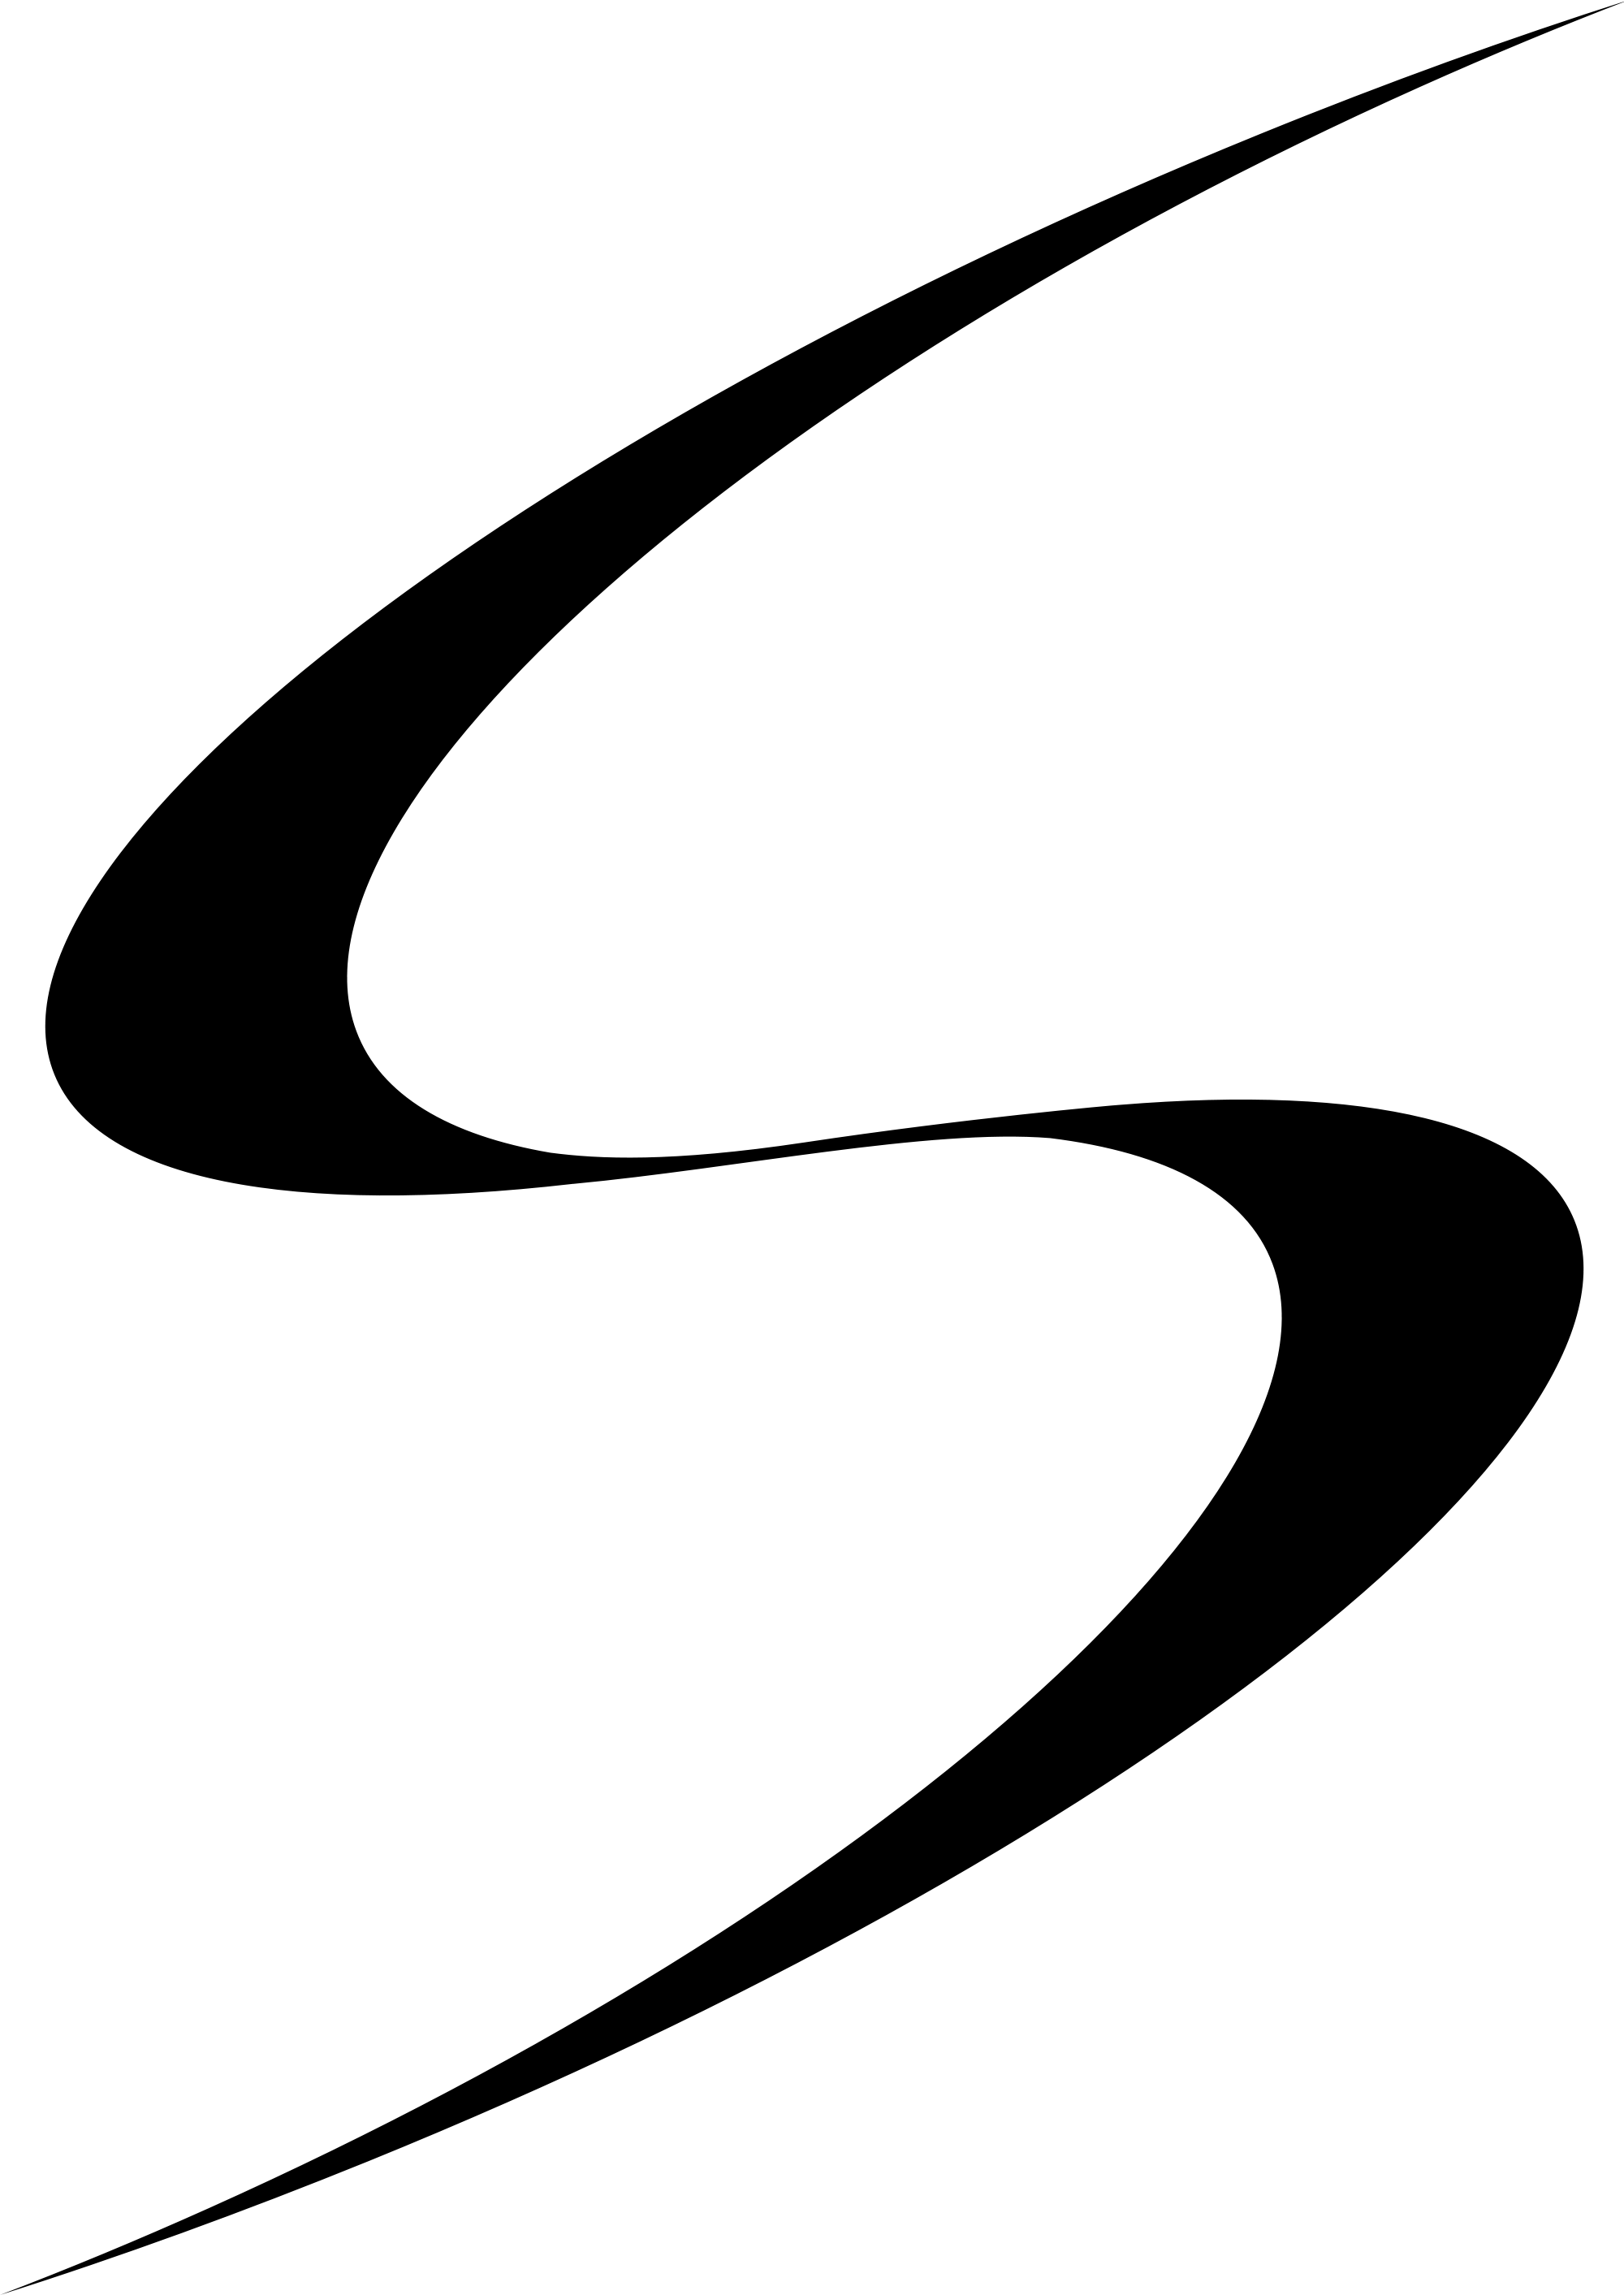 S Logo - Google Search - Galaxy S Logo (2000x2826)